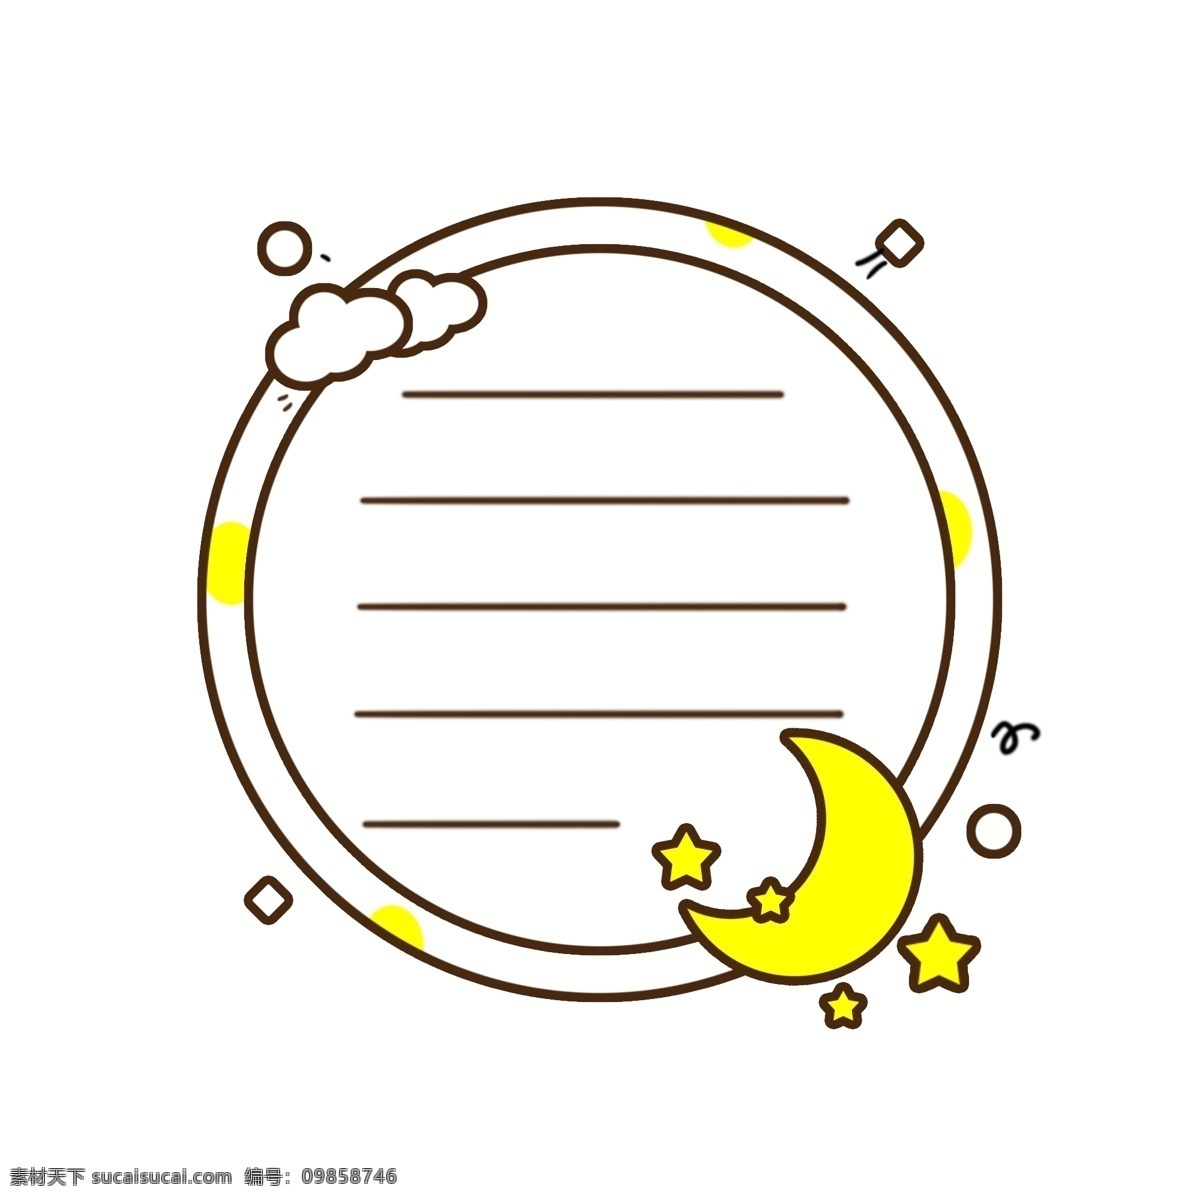 卡通 黄色 云朵 月亮 文本 对话框 边框 矢量 元素 可爱 星星 装饰 手绘 横线 圆形